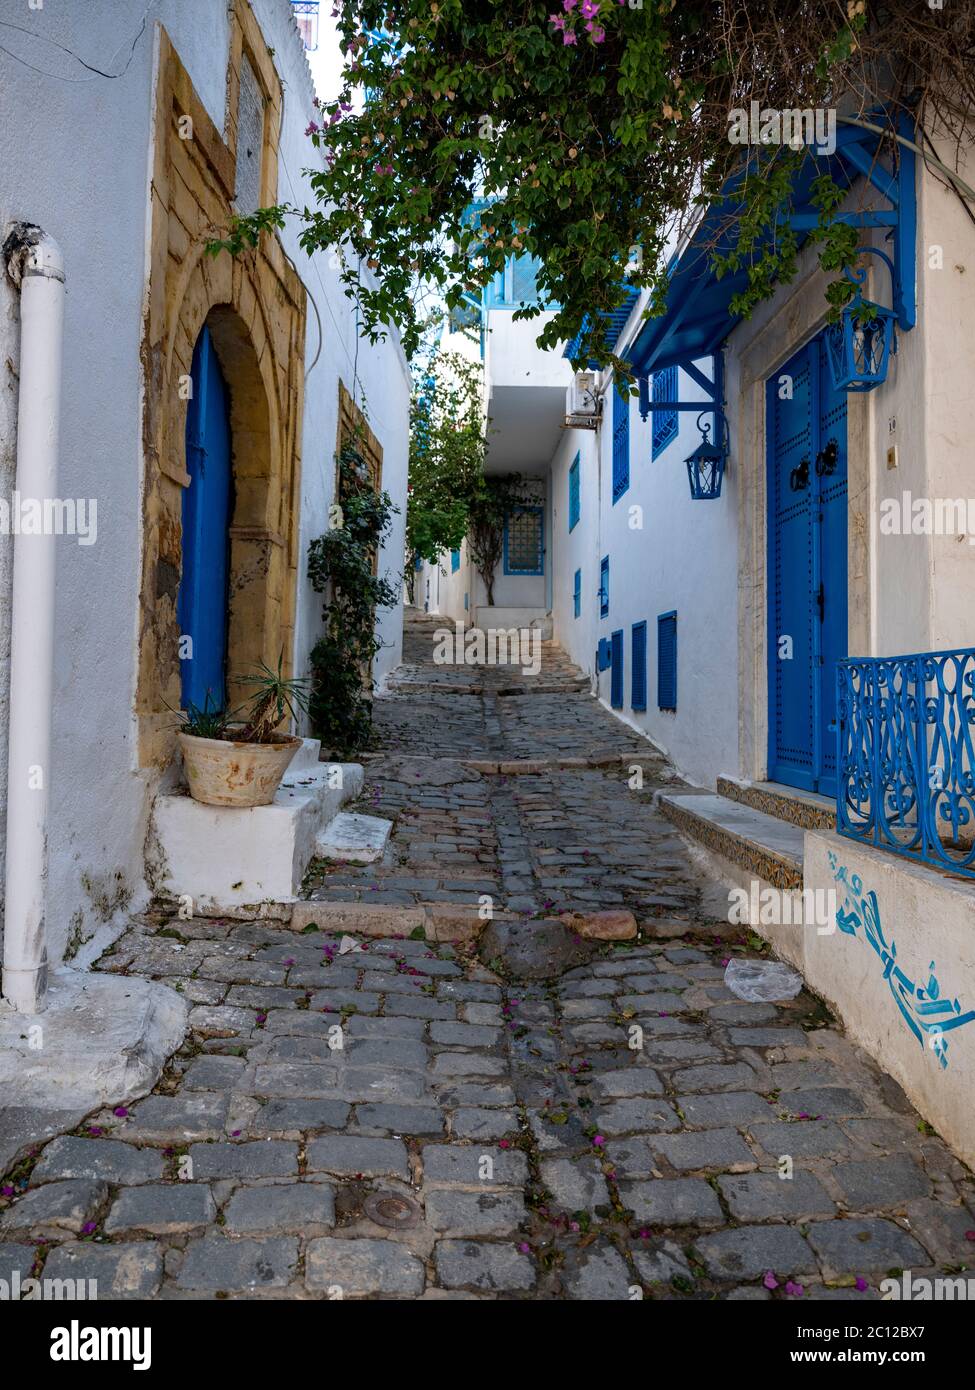 Straßenszene im Dorf Sidi bou Said, Tunesien, bekannt für seine traditionelle Verwendung von blauen und weißen Farben auf den Fassaden von Gebäuden. Stockfoto